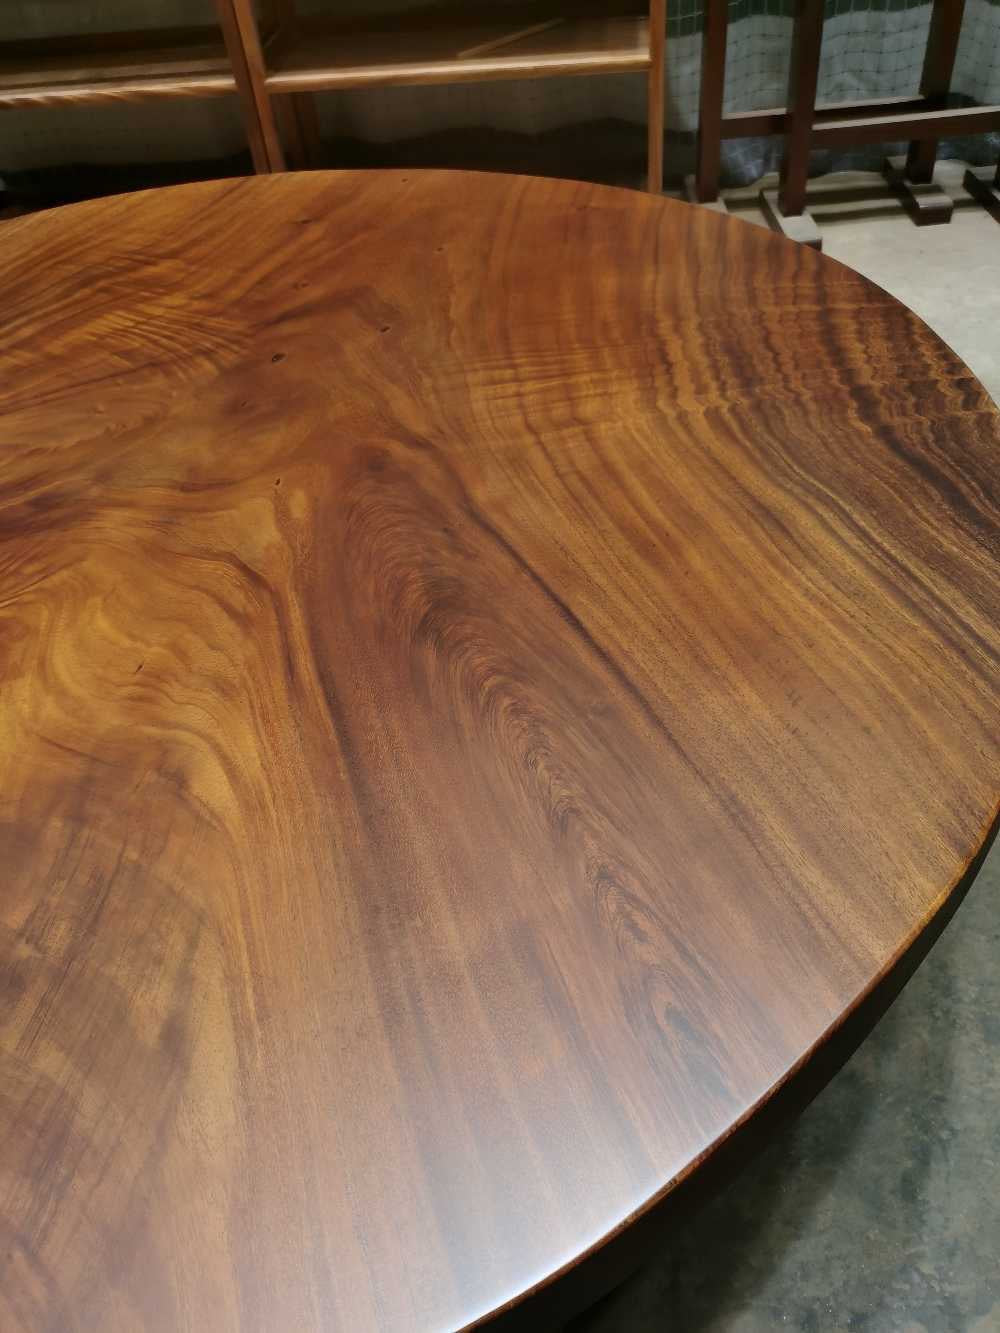 runt bord i antikt trä, runt bord i rått trä, runda bordsskivor i massivt trä